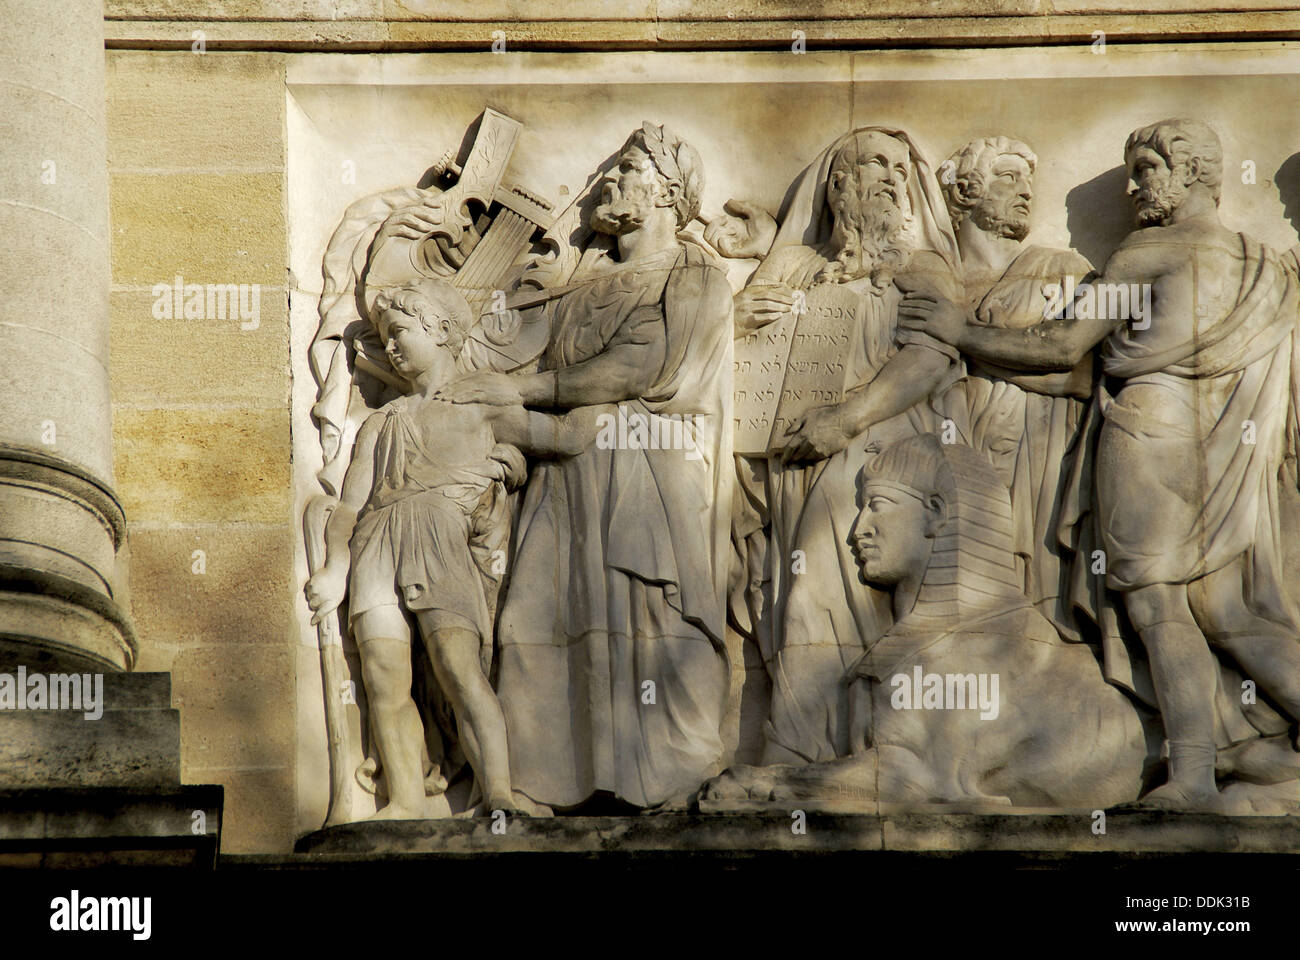 Moïse, Amon Ra, y otros en la fachada del 'Musée d'Aquitaine' en Burdeos. Gironde. Francia. Foto de stock